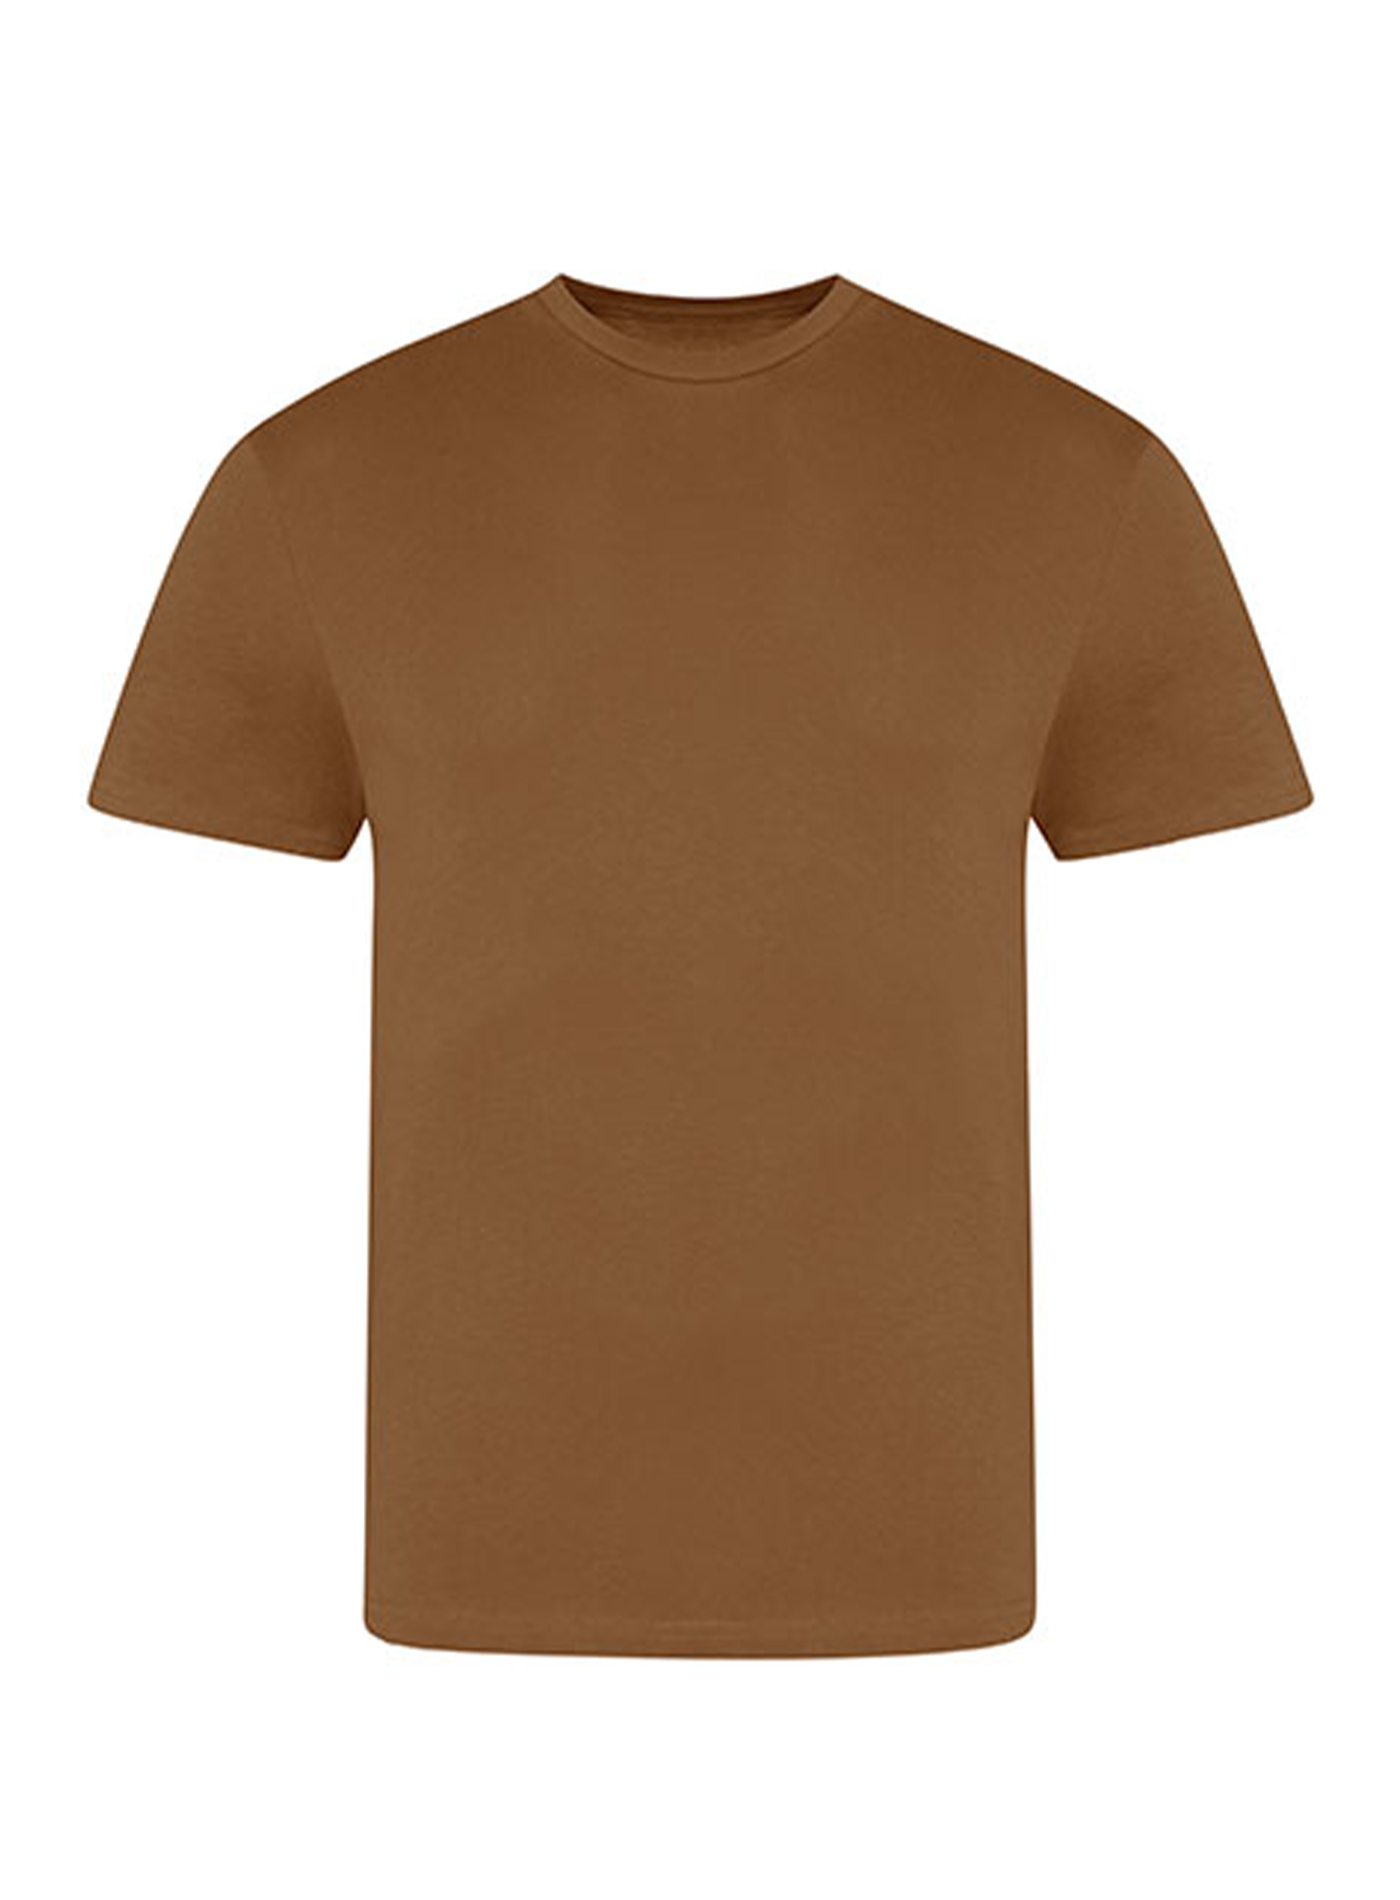 Pánské tričko Just Ts - Karamelová 3XL